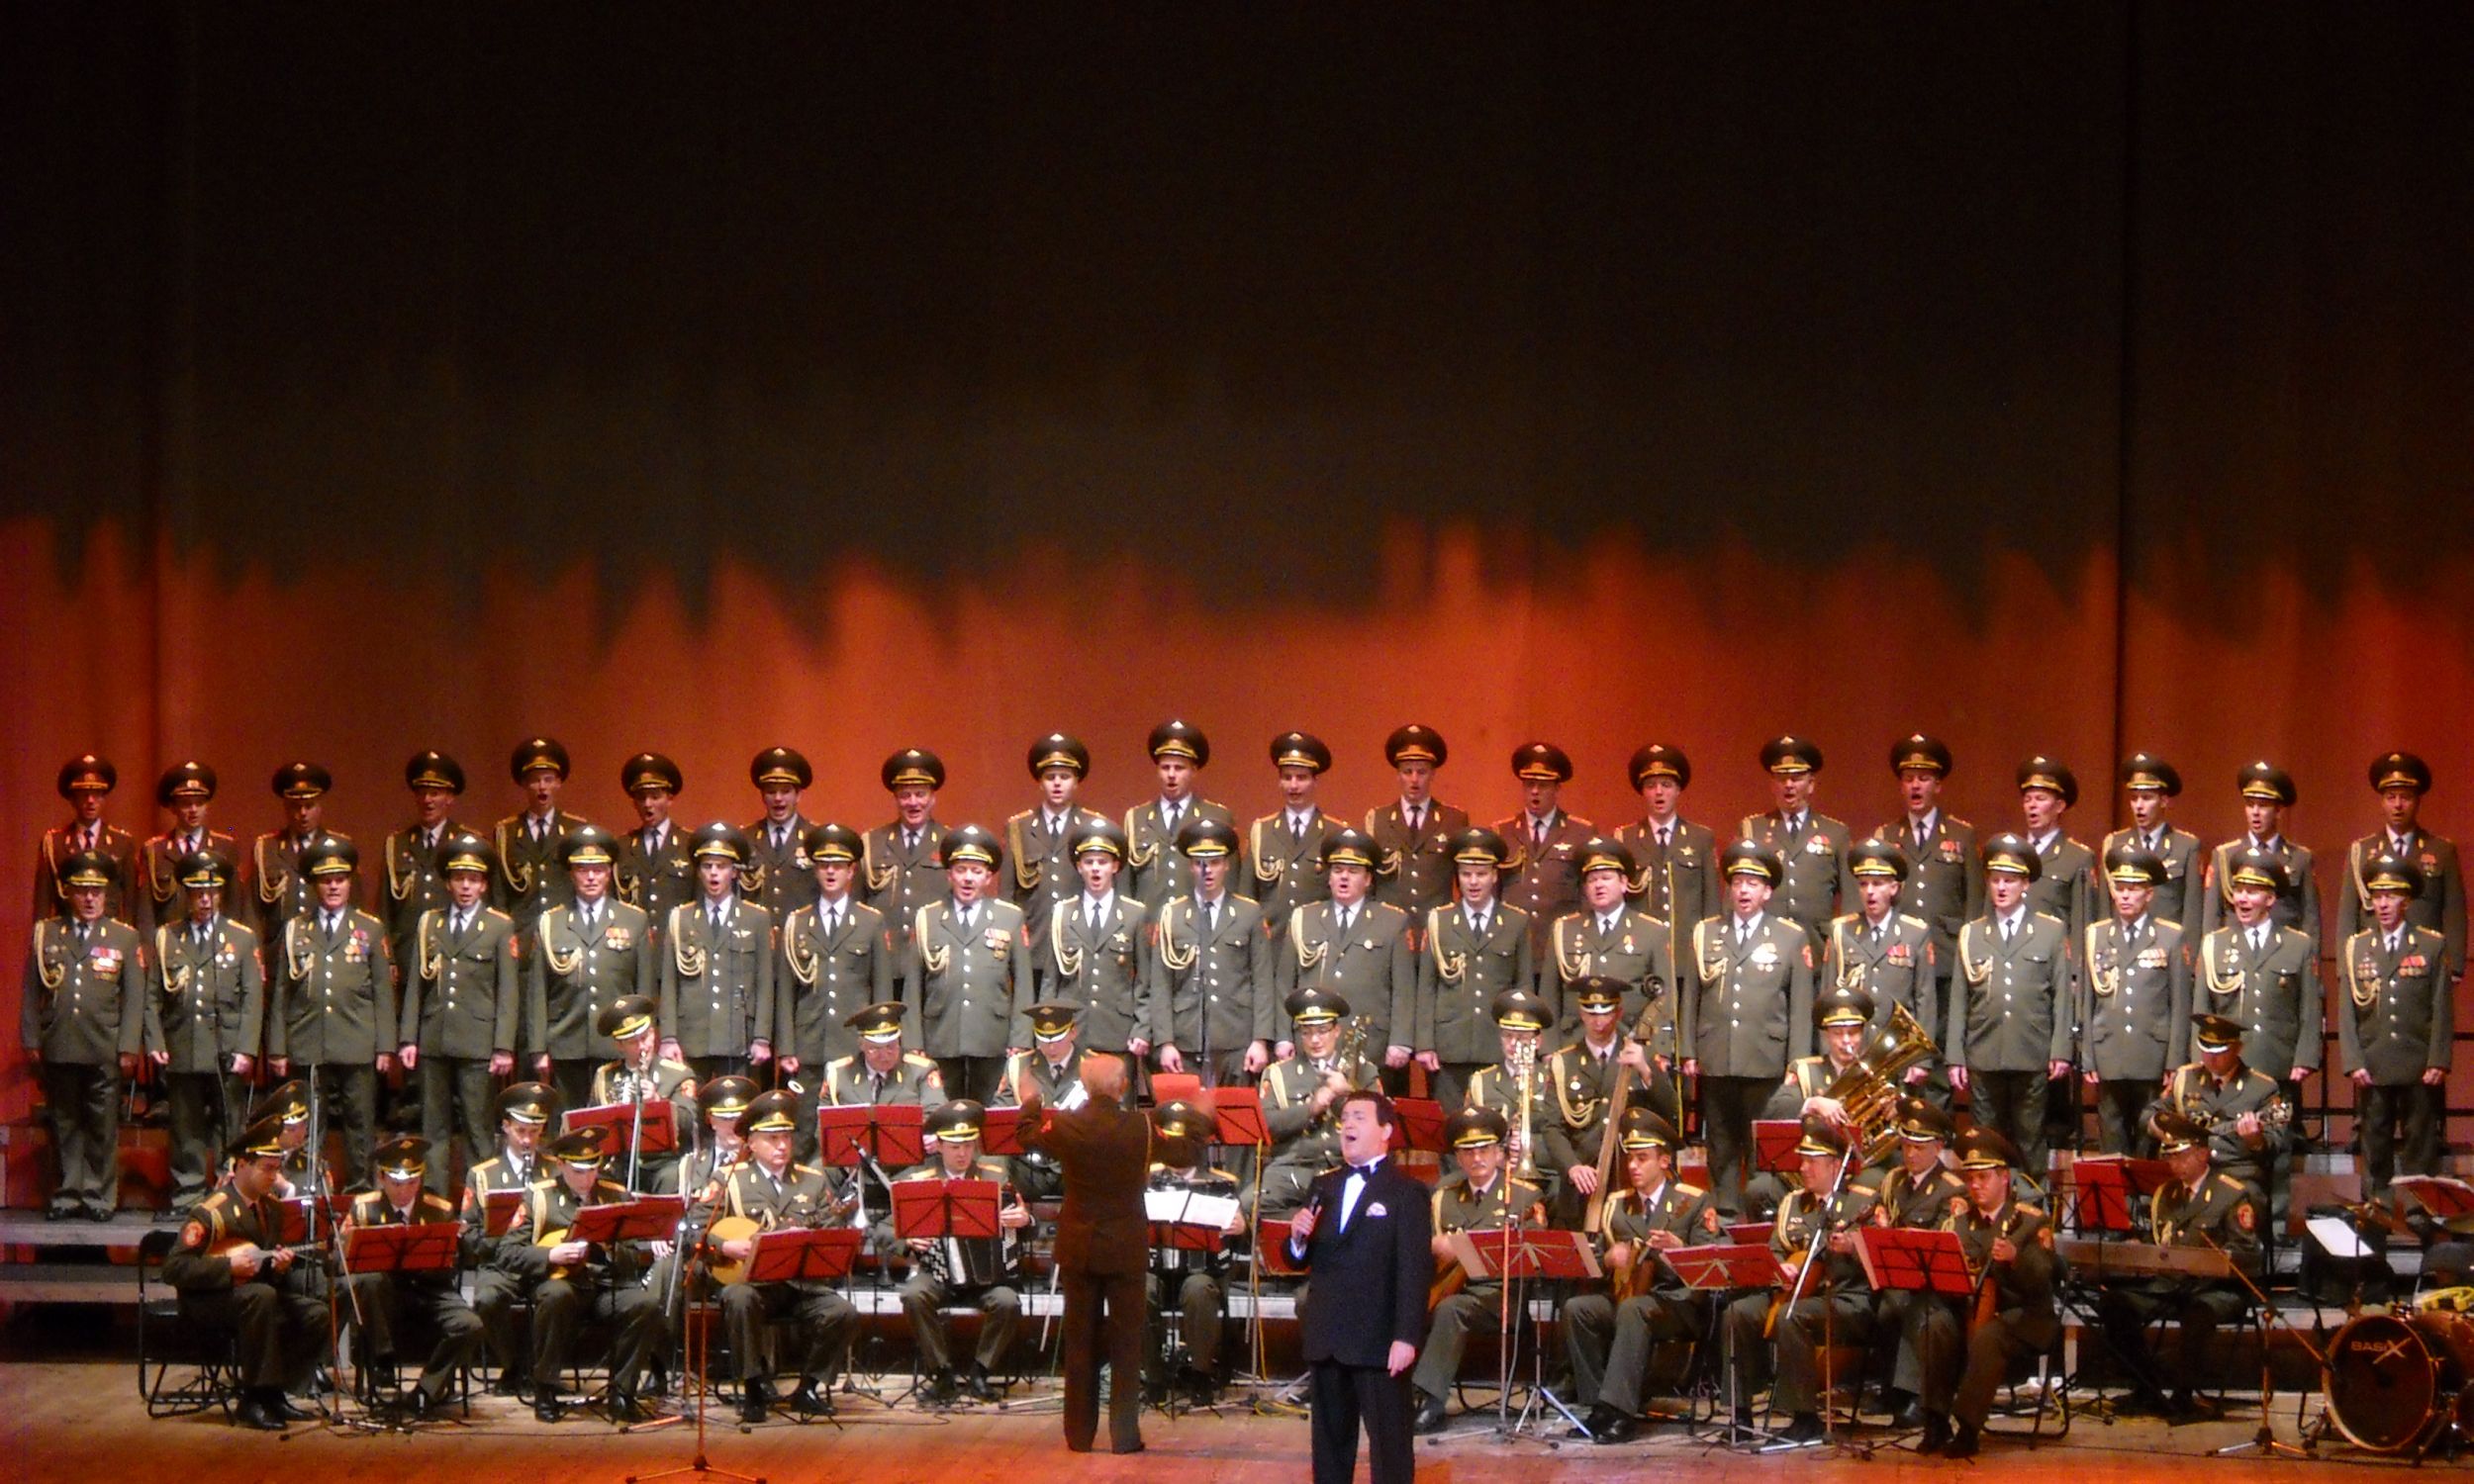 Z Chórem Aleksandrowa podczas koncertu w Warszawie w 2009 roku. Fot. Wikimedia/Loraine